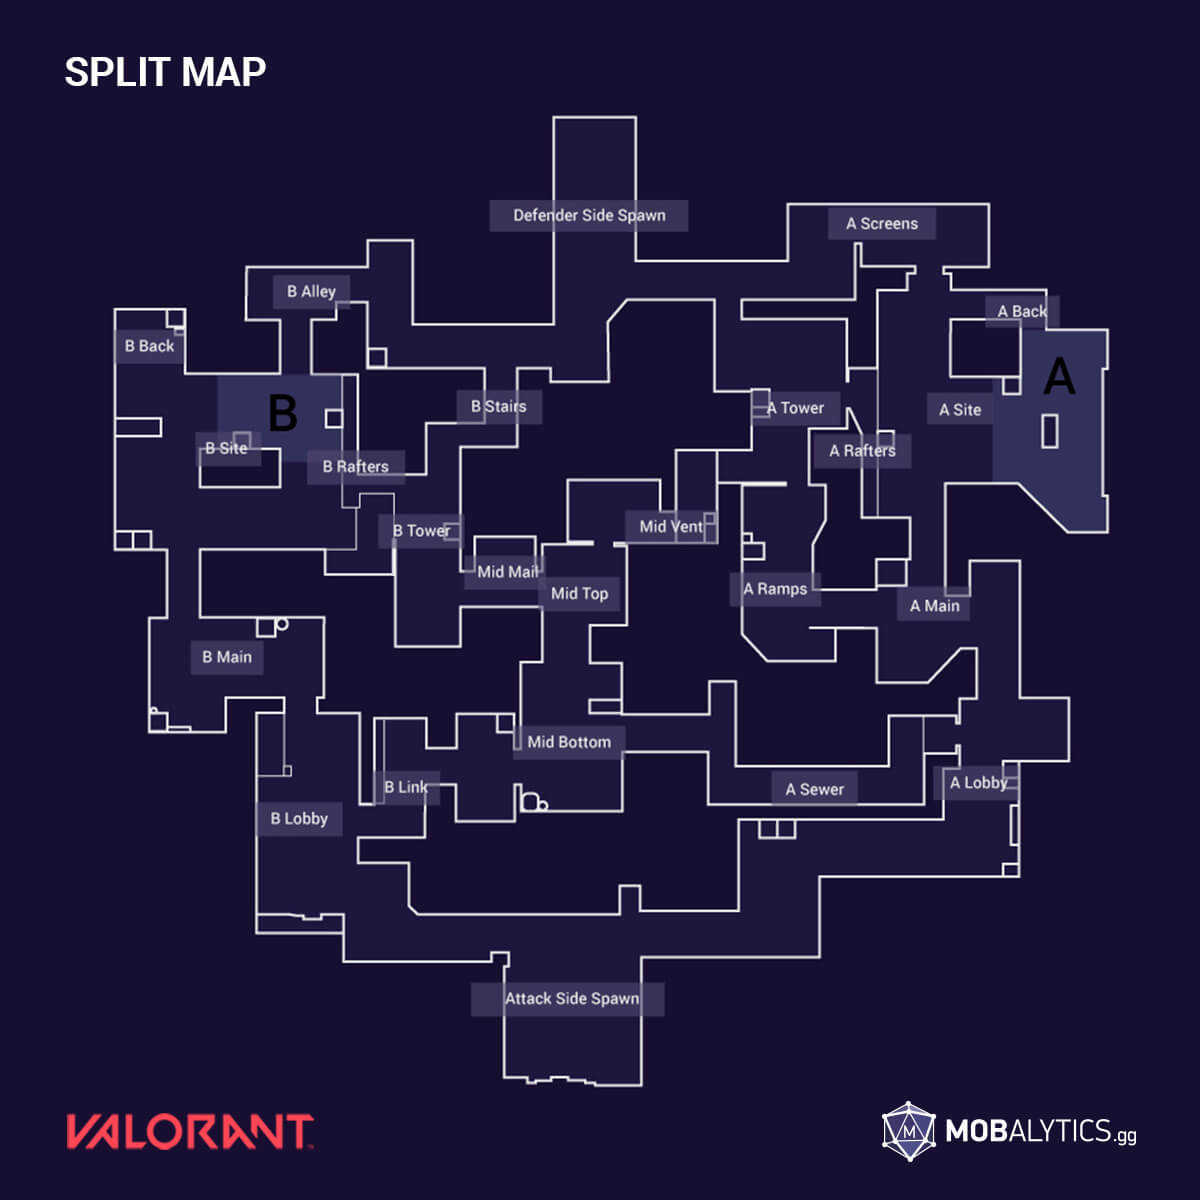 VALORANT's Sunset Map Revealed - Mobalytics